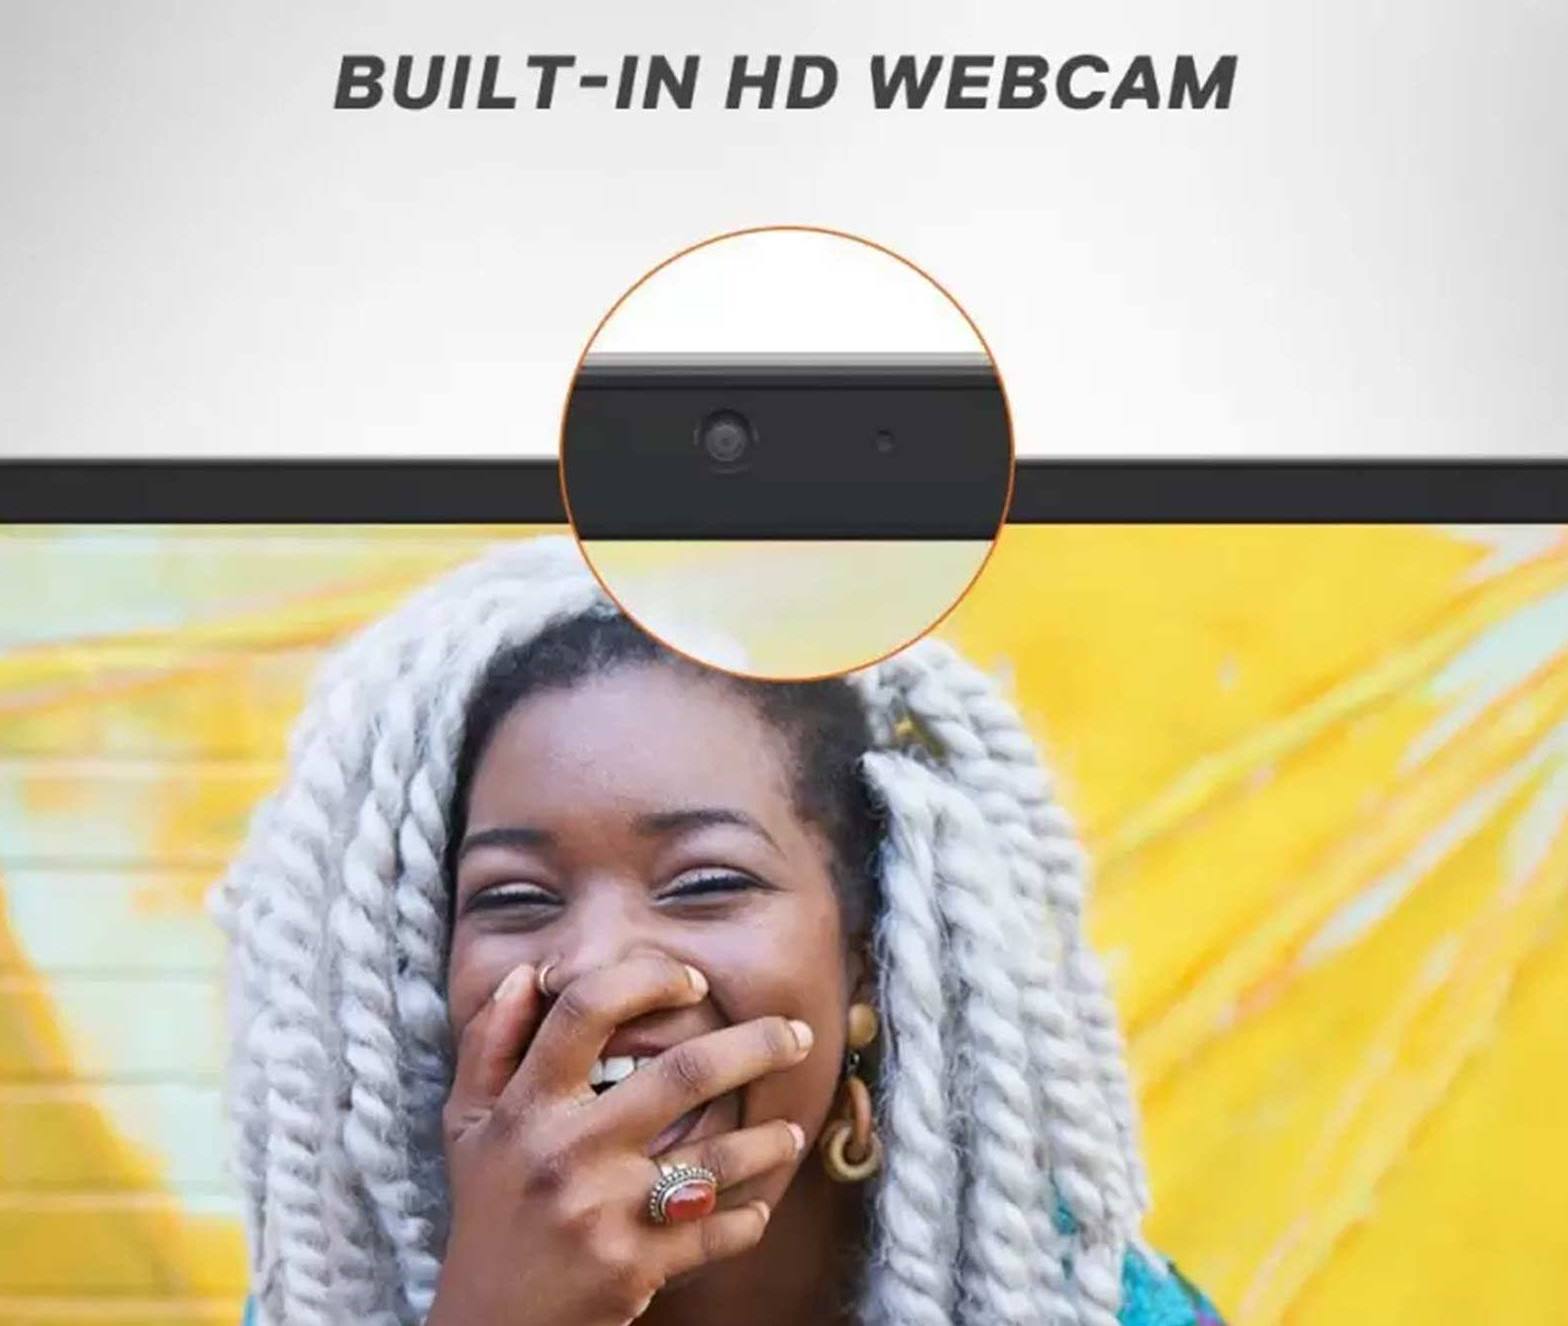 Notebook Dell Inspiron 15 (3511) má vestavěnou 720p webkamerou, která umožní snadnou realizaci videohovorů v HD kvalitě.